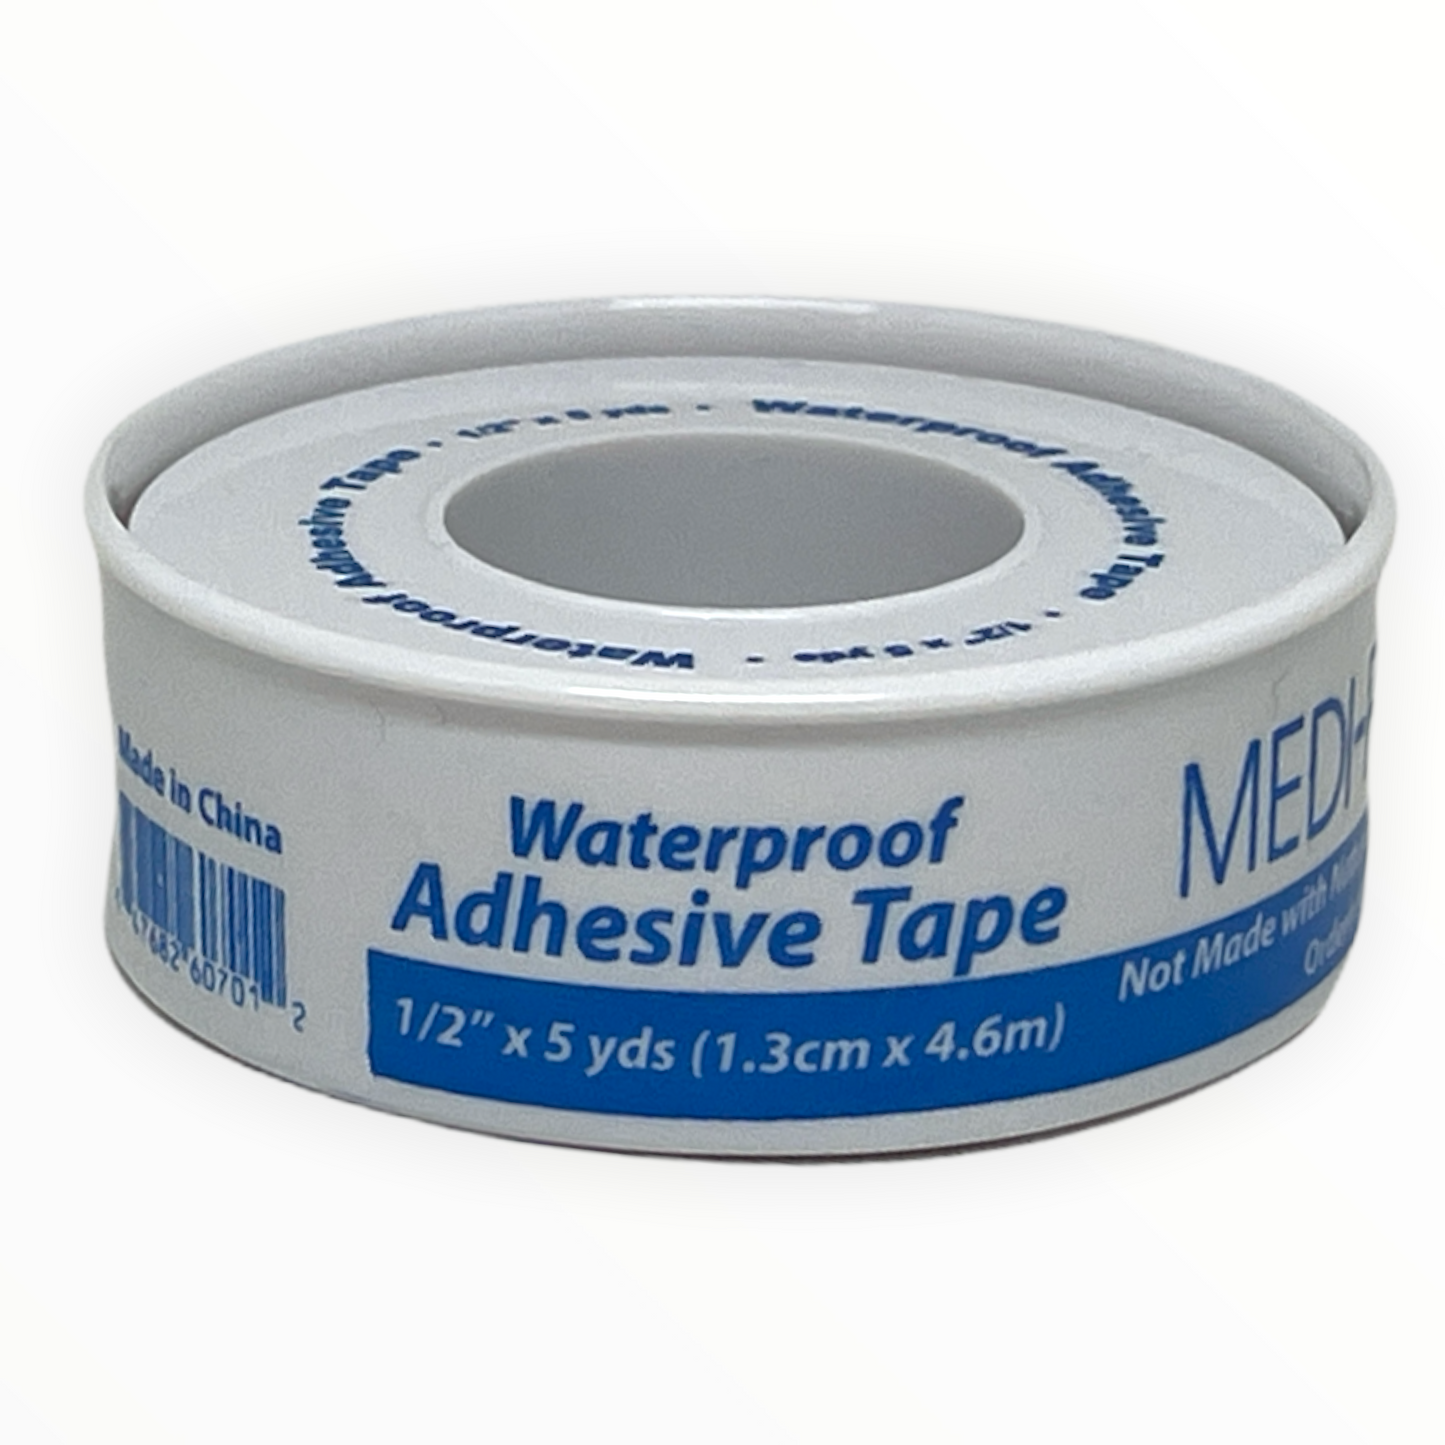 Medique | Adhesive Tape Waterproof 1/2" x 5 yds